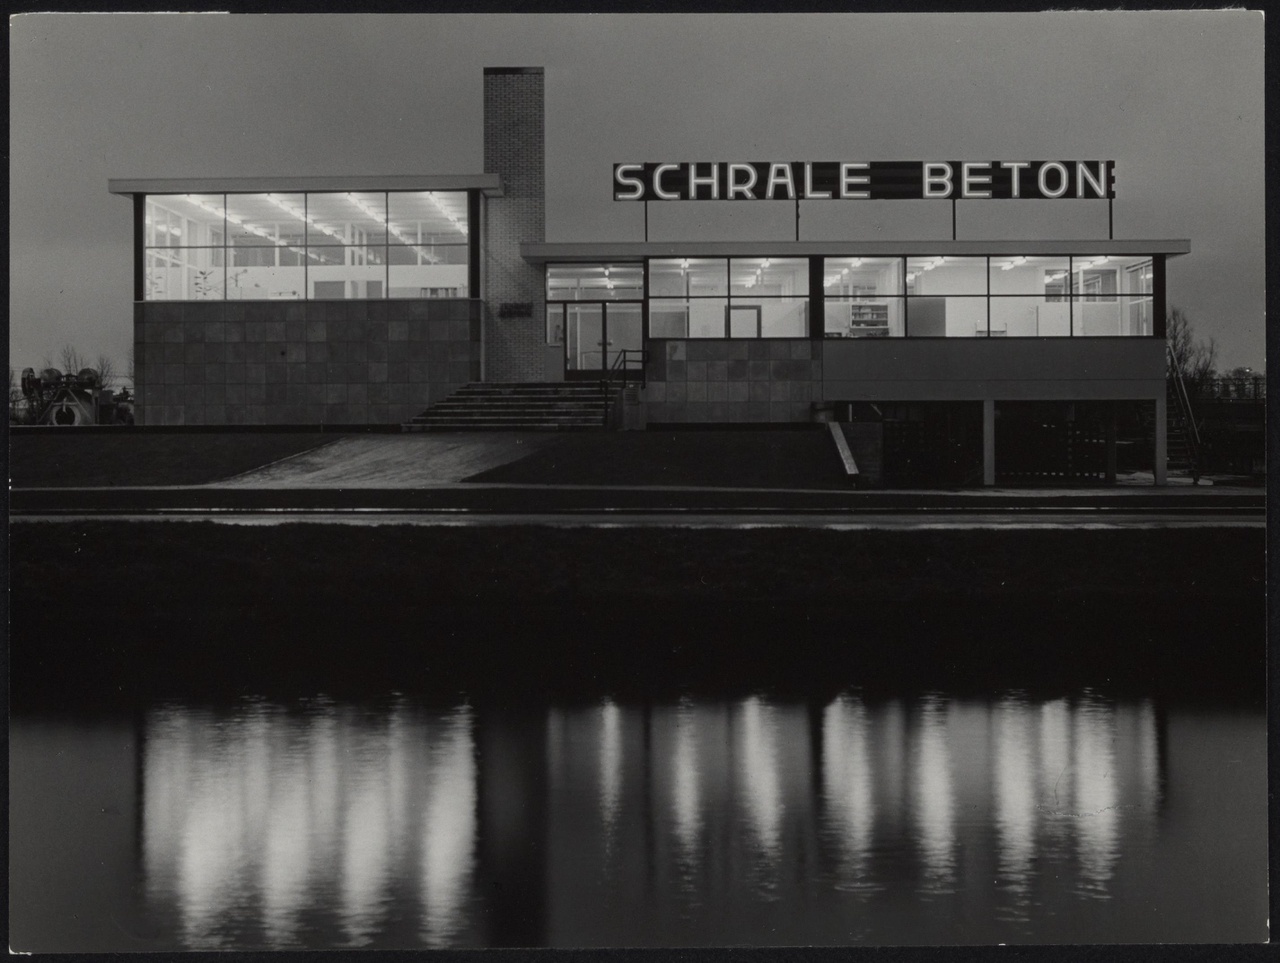 Afbeelding van kantoor Schrale Beton, ca.1958, bij nacht